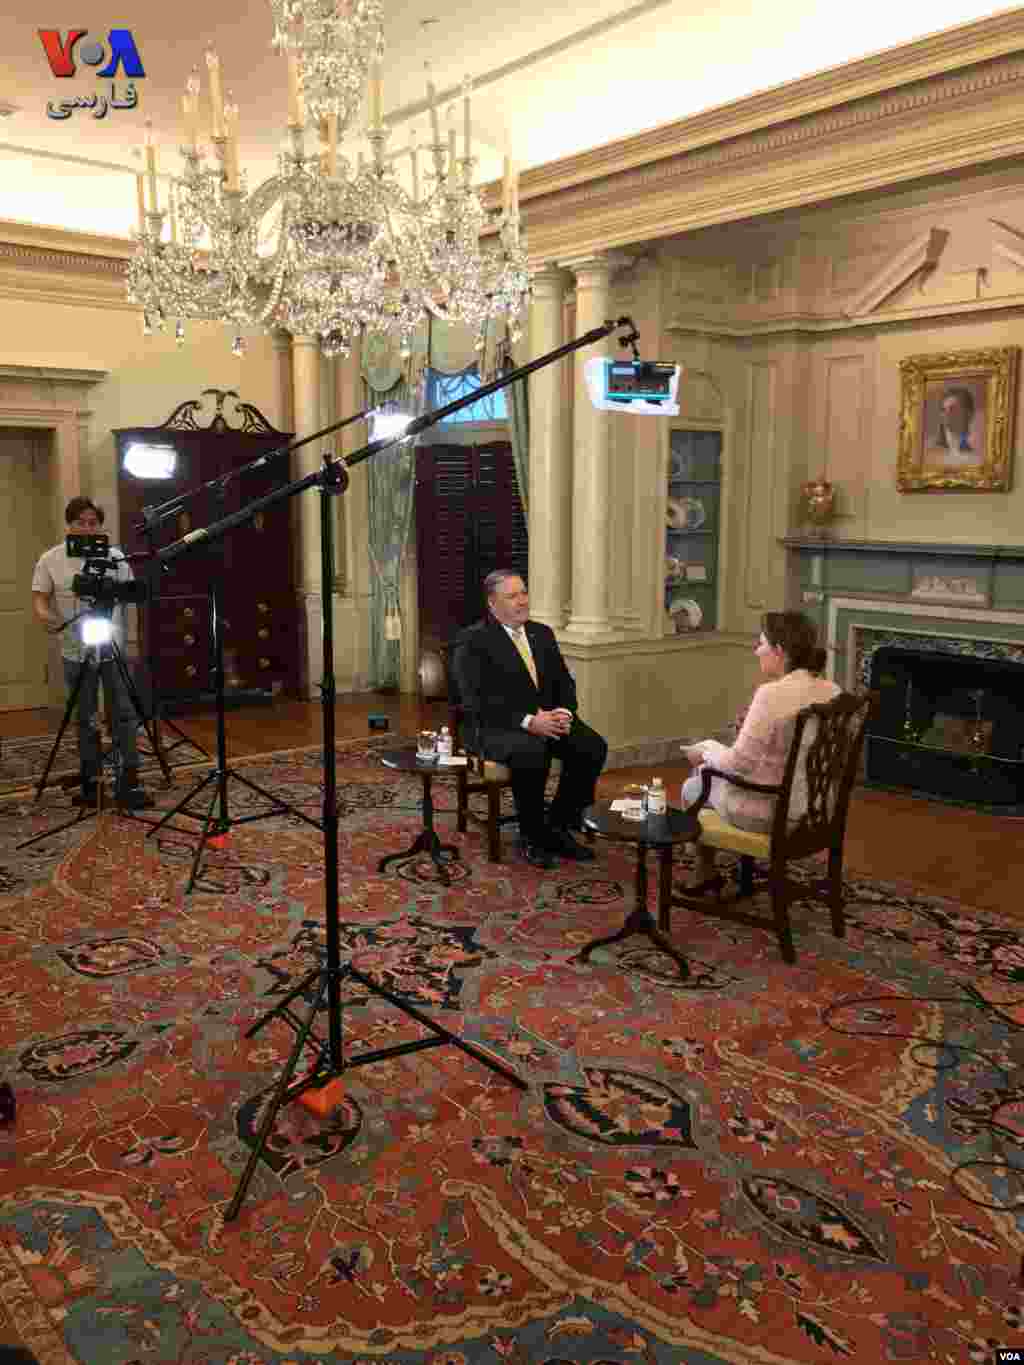 عکسی از پشت صحنه گفتگوی اختصاصی مدیر بخش فارسی صدای آمریکا با مایک پمپئو، وزیر امور خارجهٔ ایالات متحده